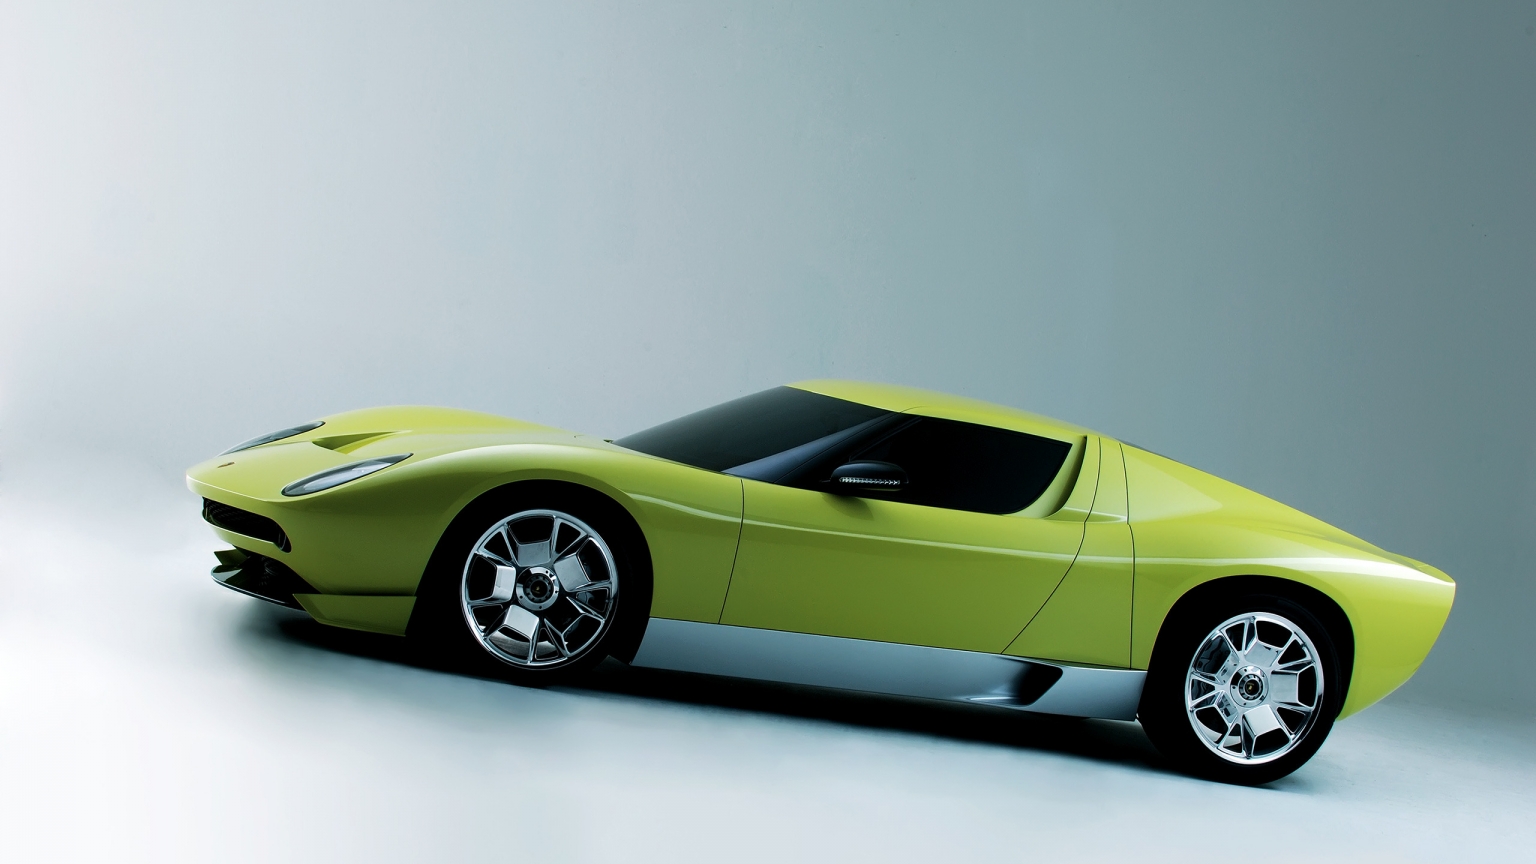 Lamborghini Miura Concept Side for 1536 x 864 HDTV resolution